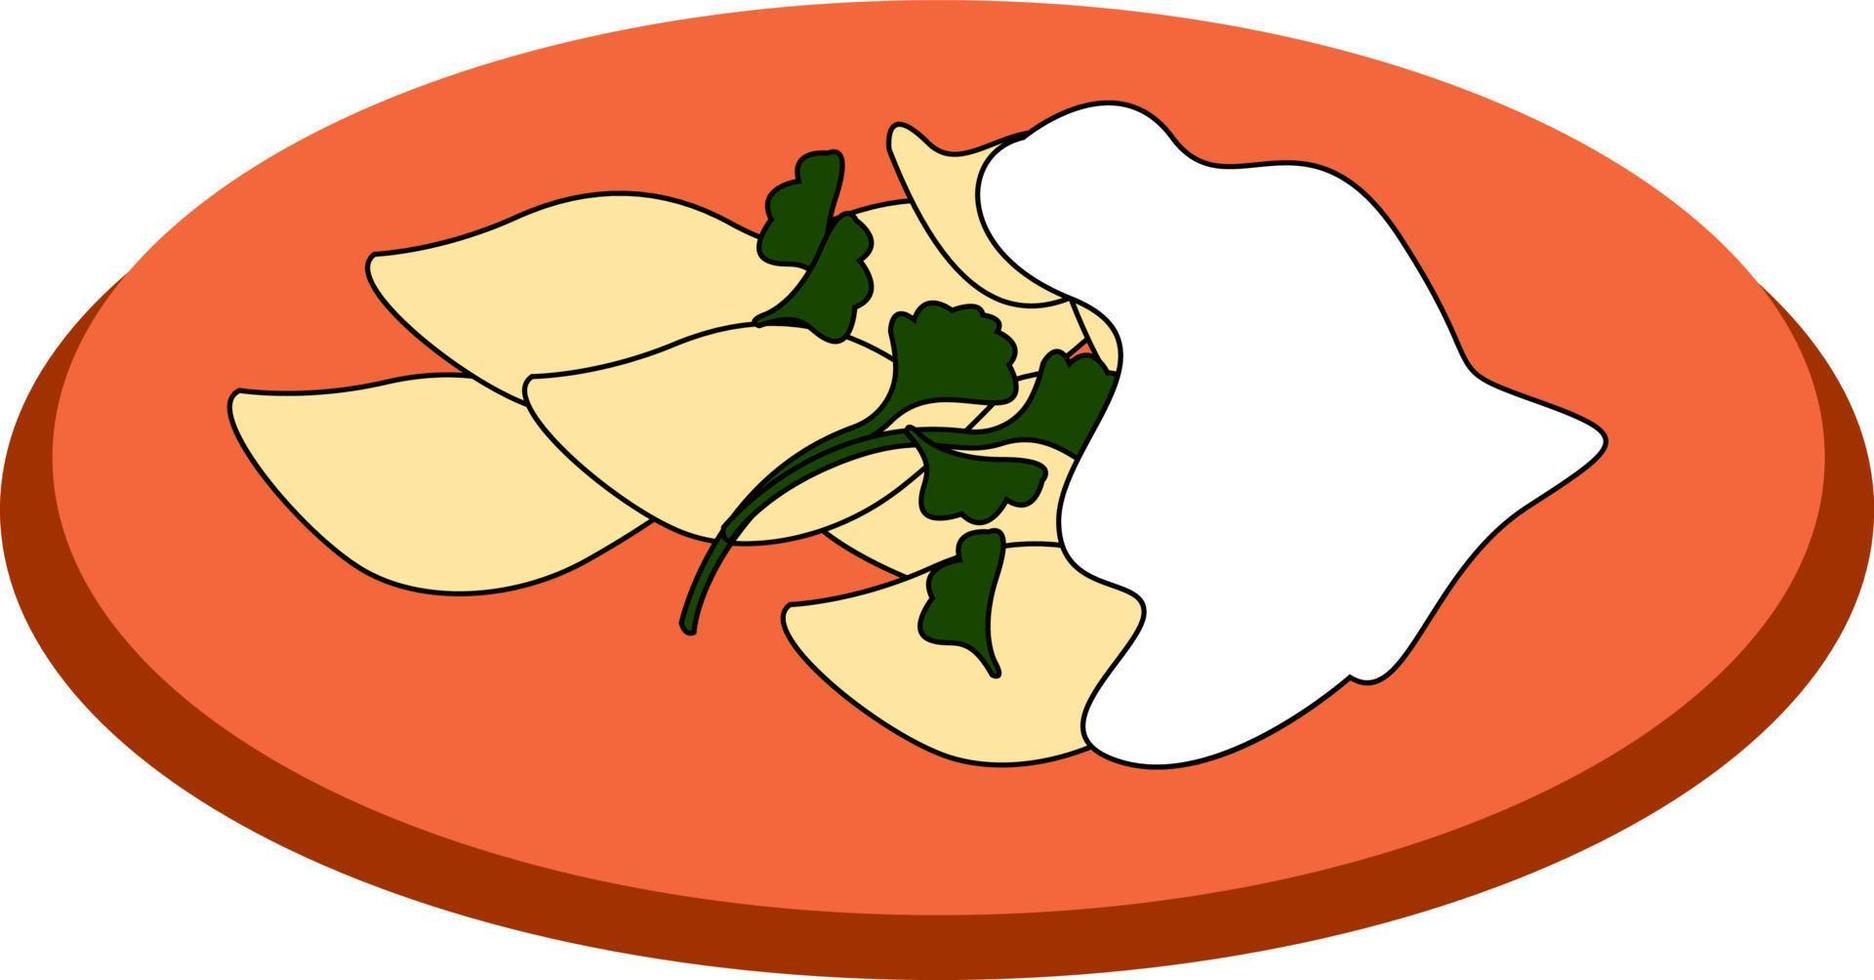 bolinhos de massa em um prato, ilustração, vetor em fundo branco.